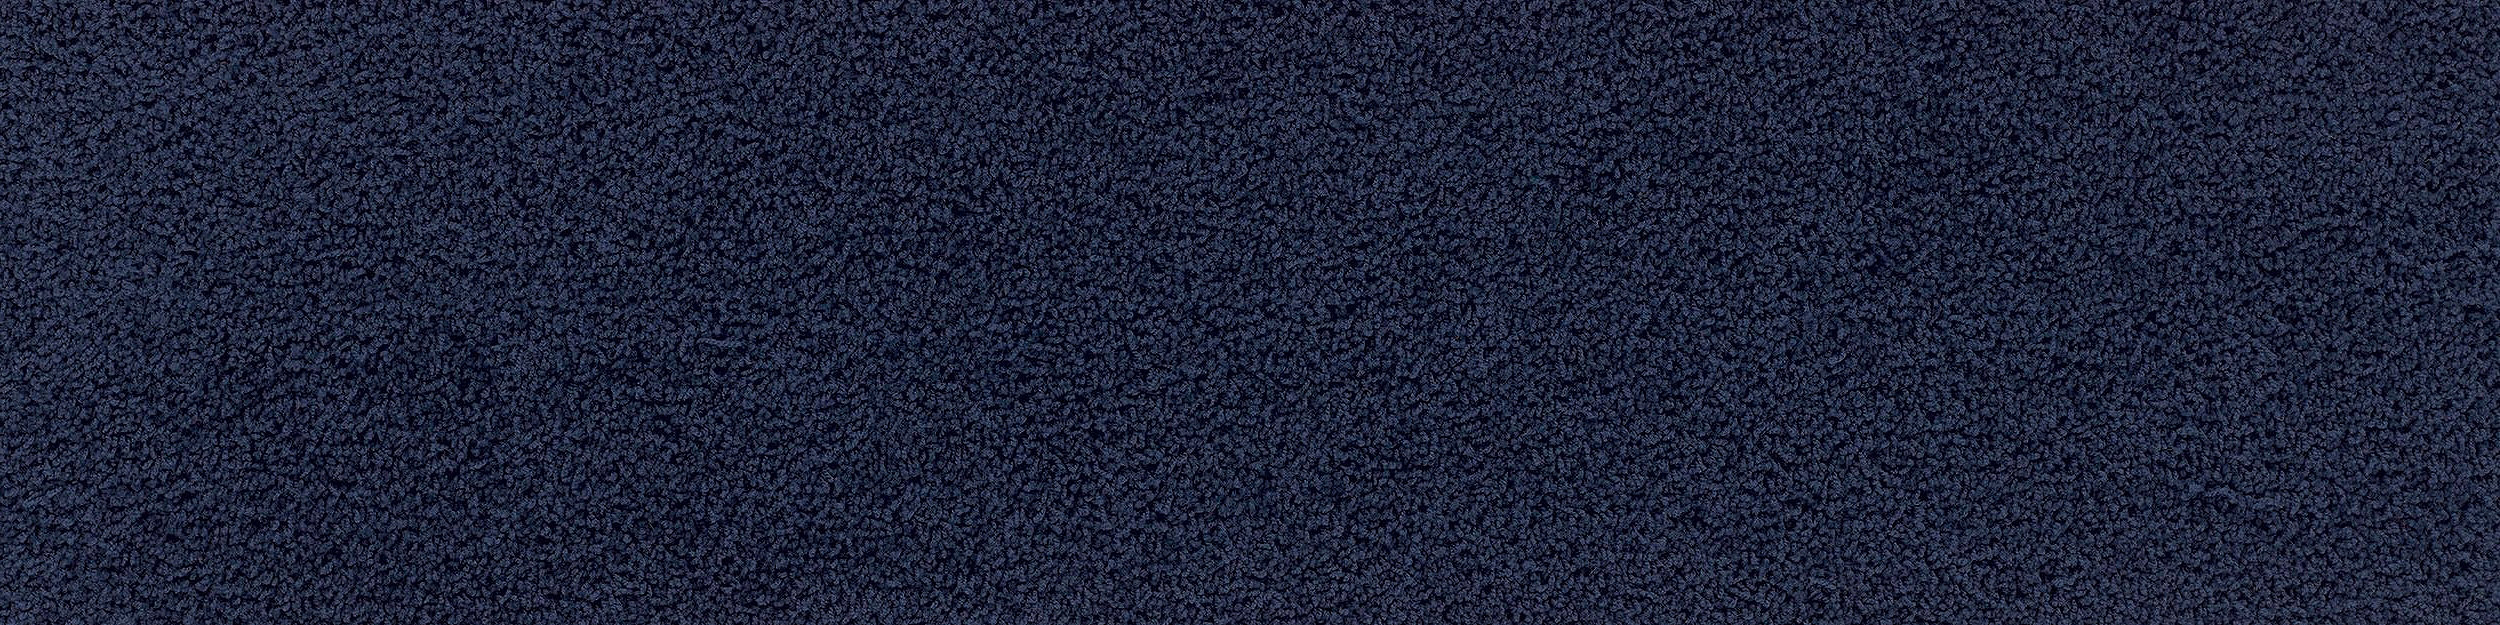 HN830 Carpet Tile In Cobalt imagen número 10